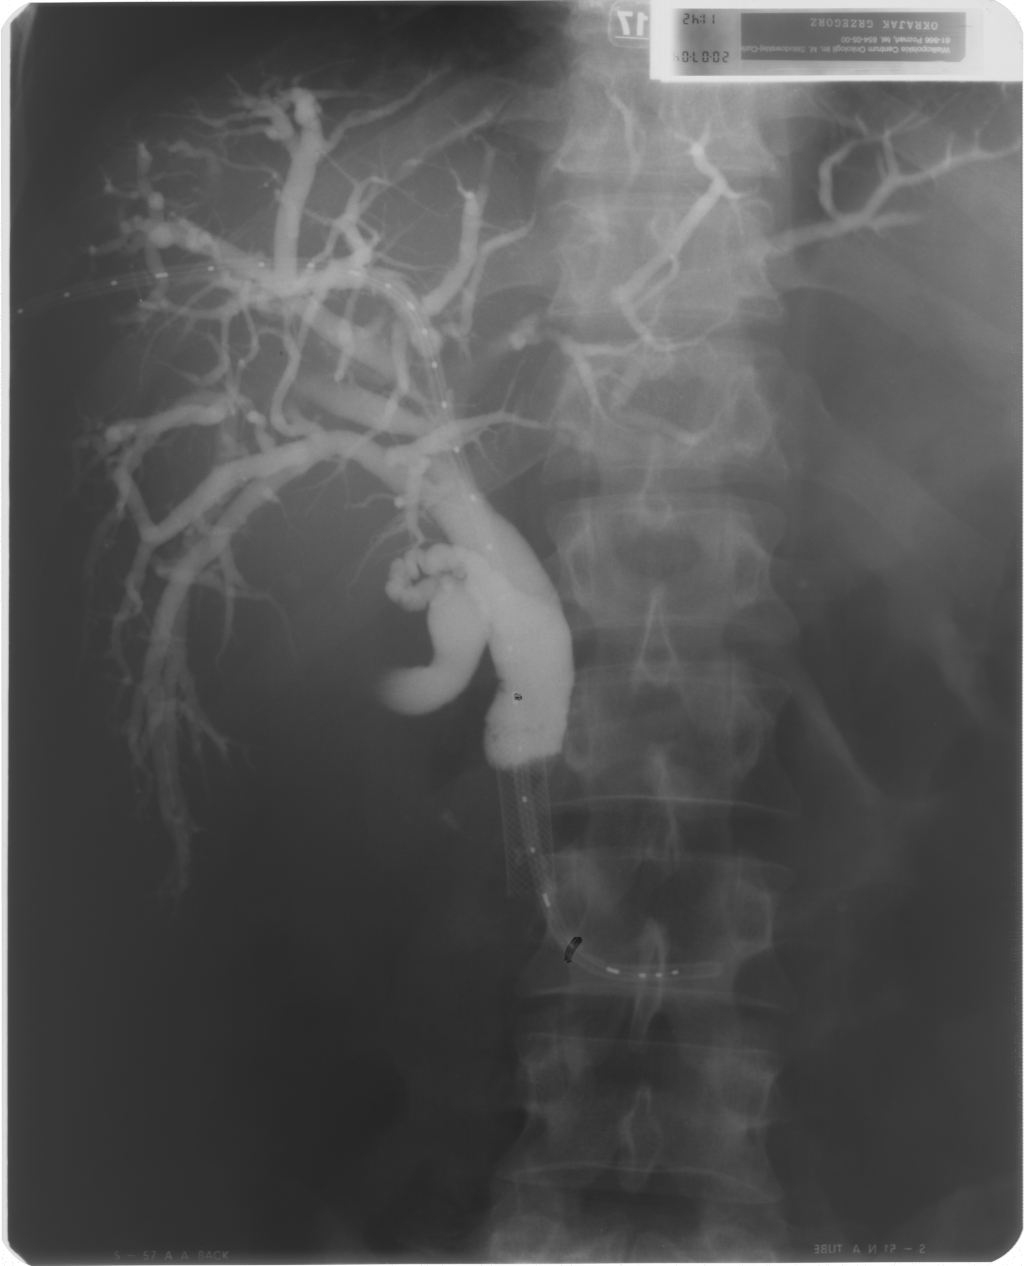 Cholangiografia - widok dróg żółciowych po implantacji aplikatora (French 5) do brachyterapii, założono dren 10 F metodą rendez-vous, widoczny stent